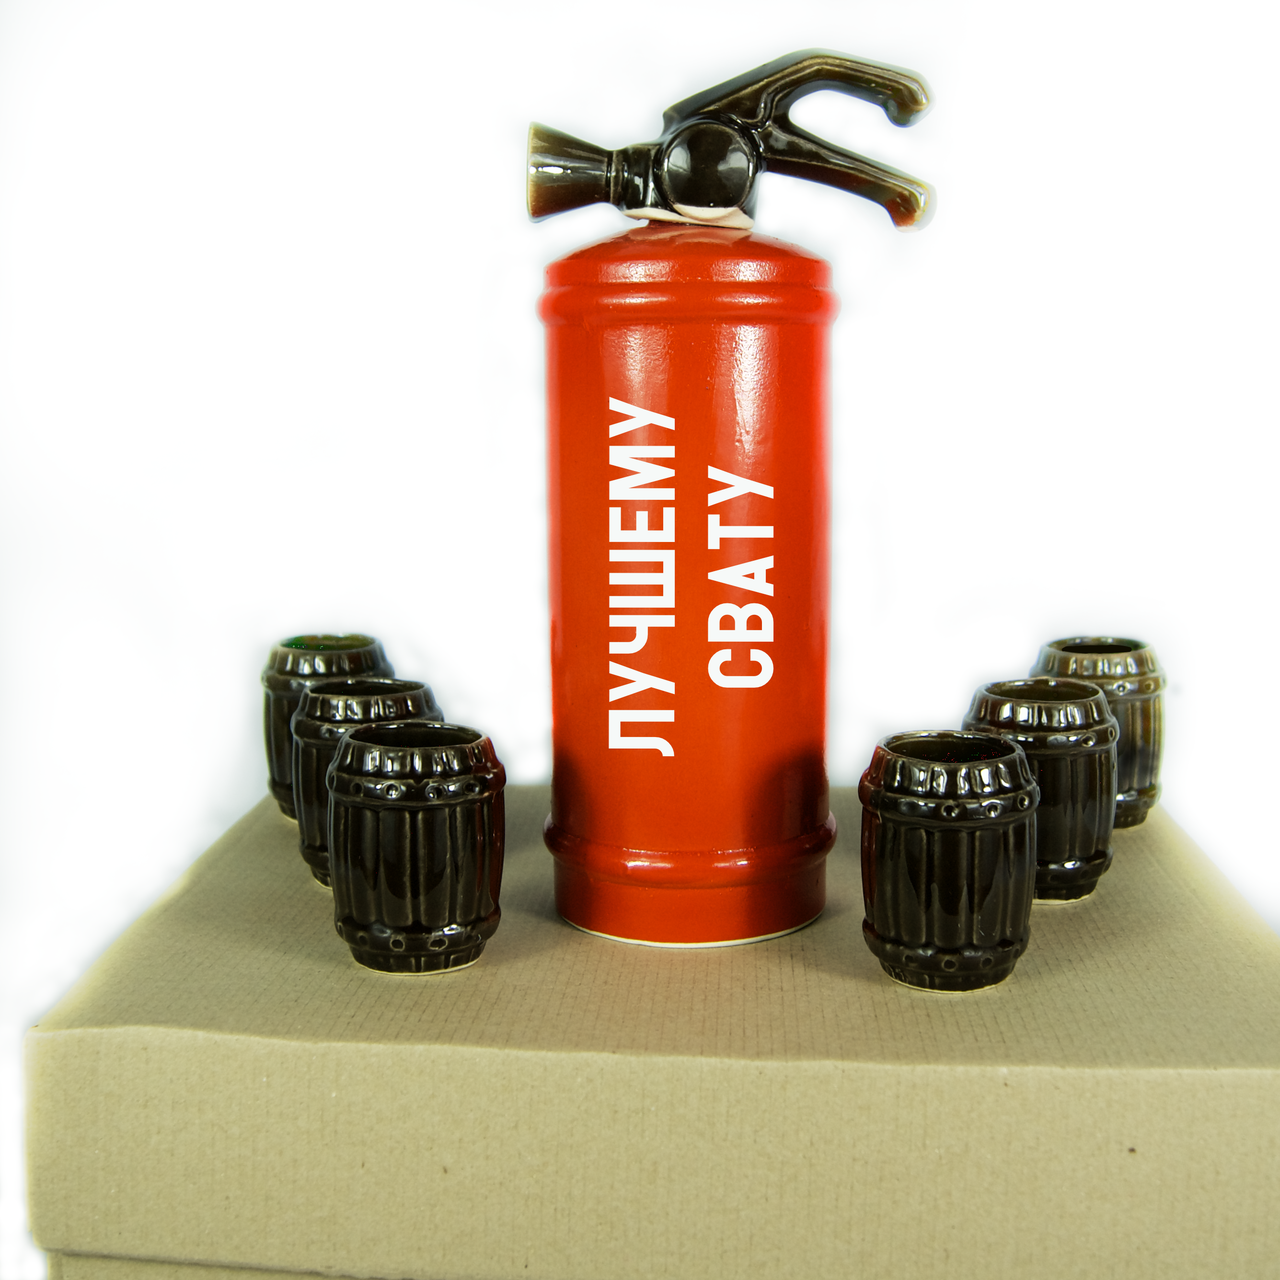 Огнетушитель-бар красный "Лучшему свату" подарочный набор в красивой упаковке. Огнетушитель + 6 рюмок.